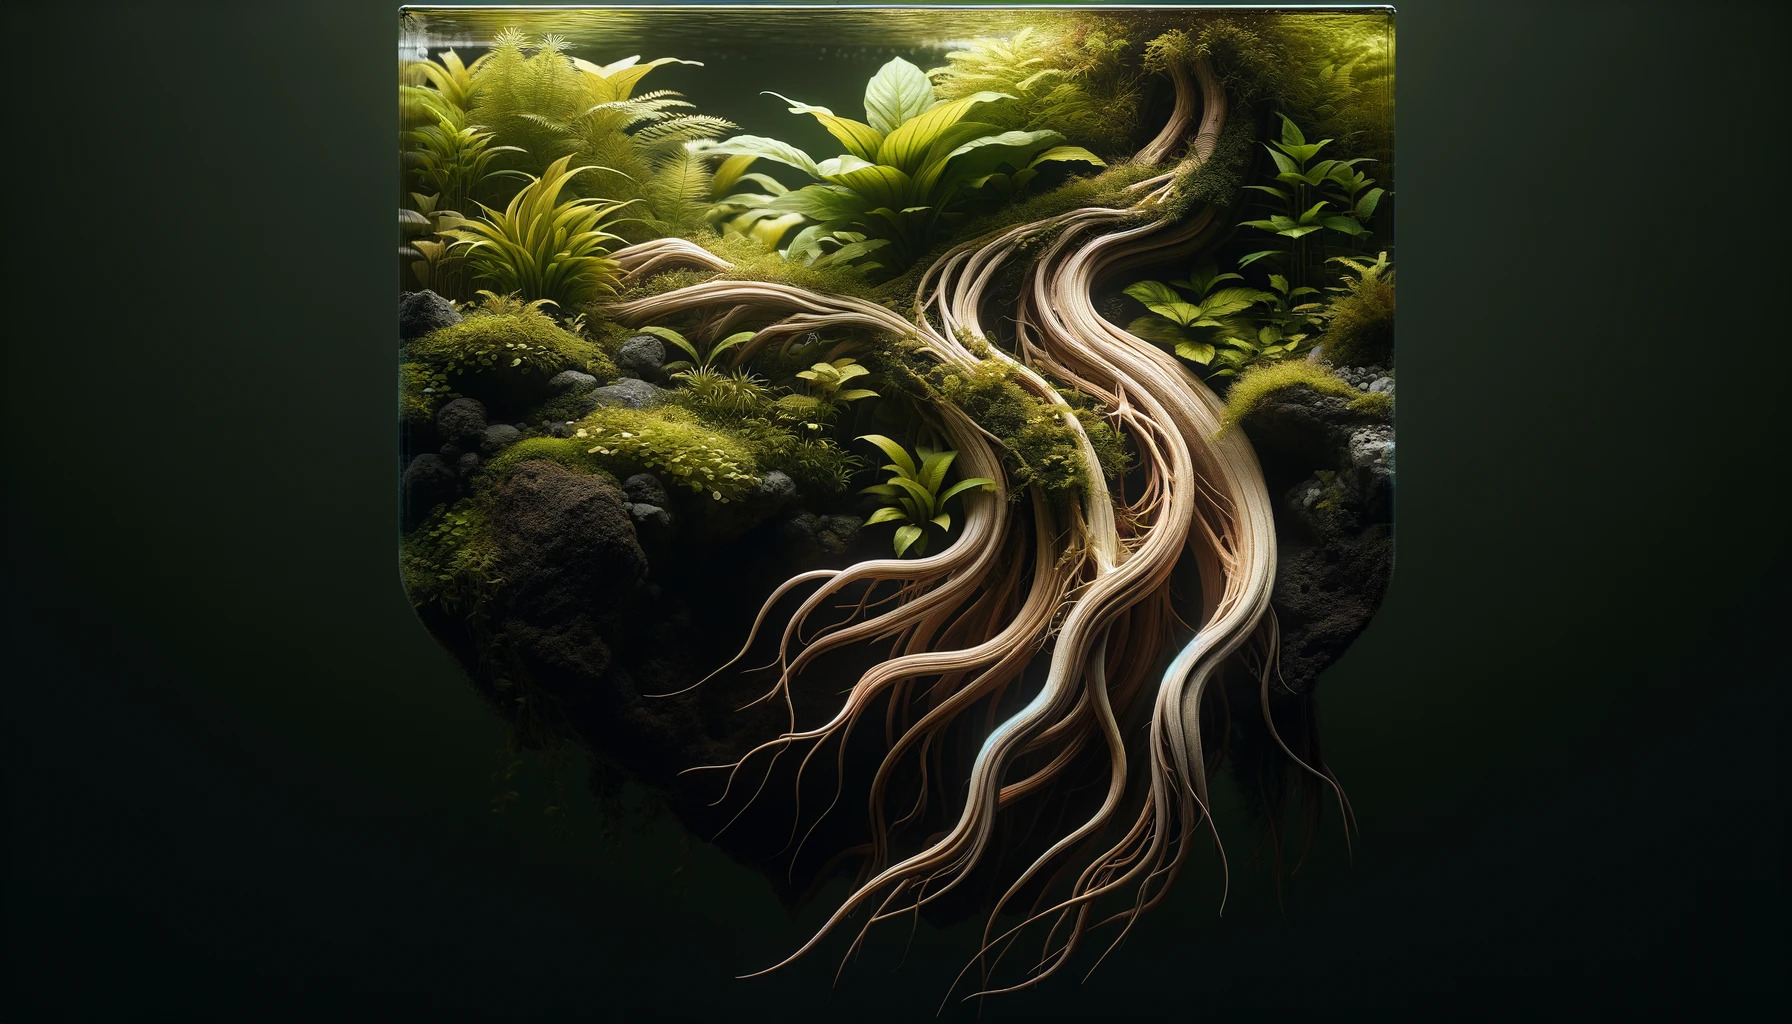 Ausschnitt eines Aquariums mit vielen Wurzeln und Pflanzen, künstlerisch